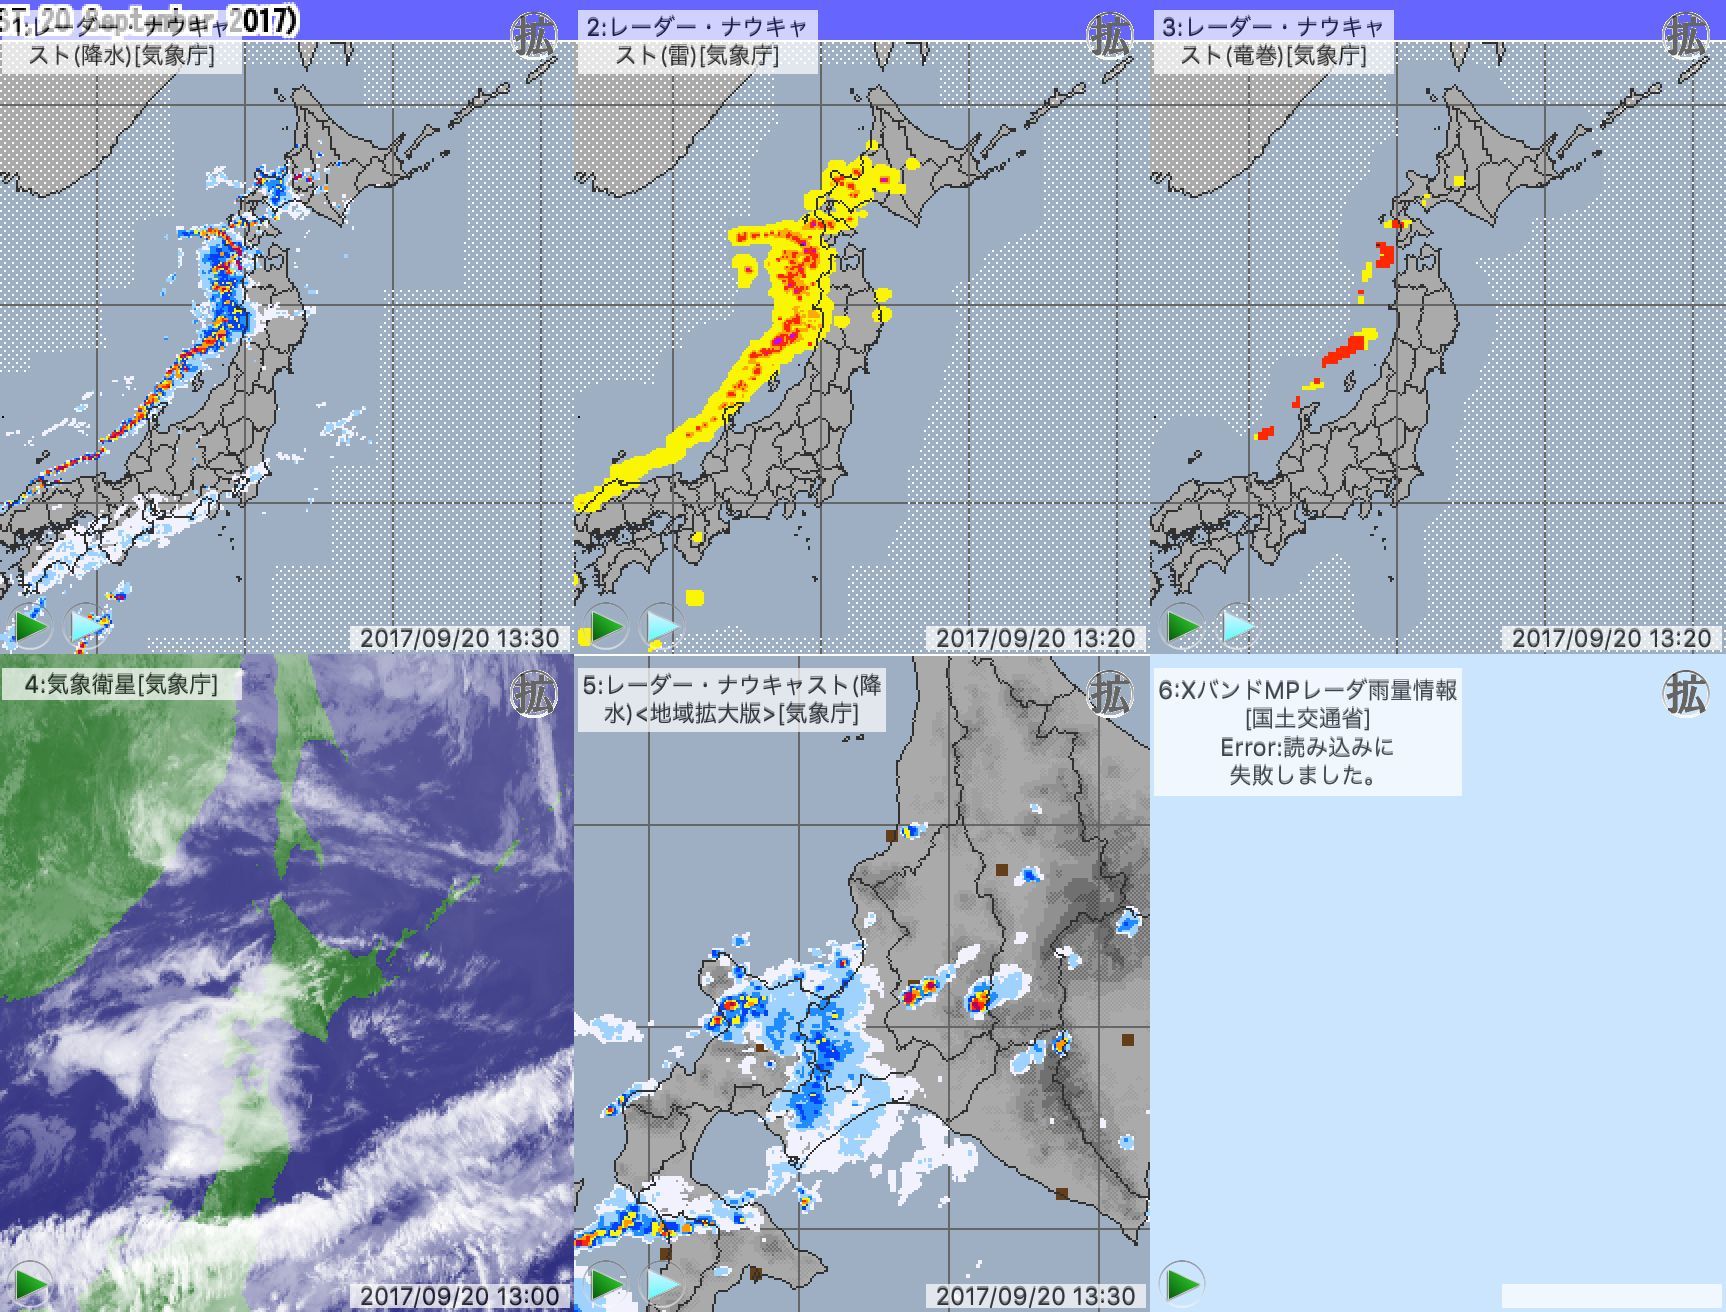 天気予報が不可能な今日の日本_c0025115_21295877.jpg